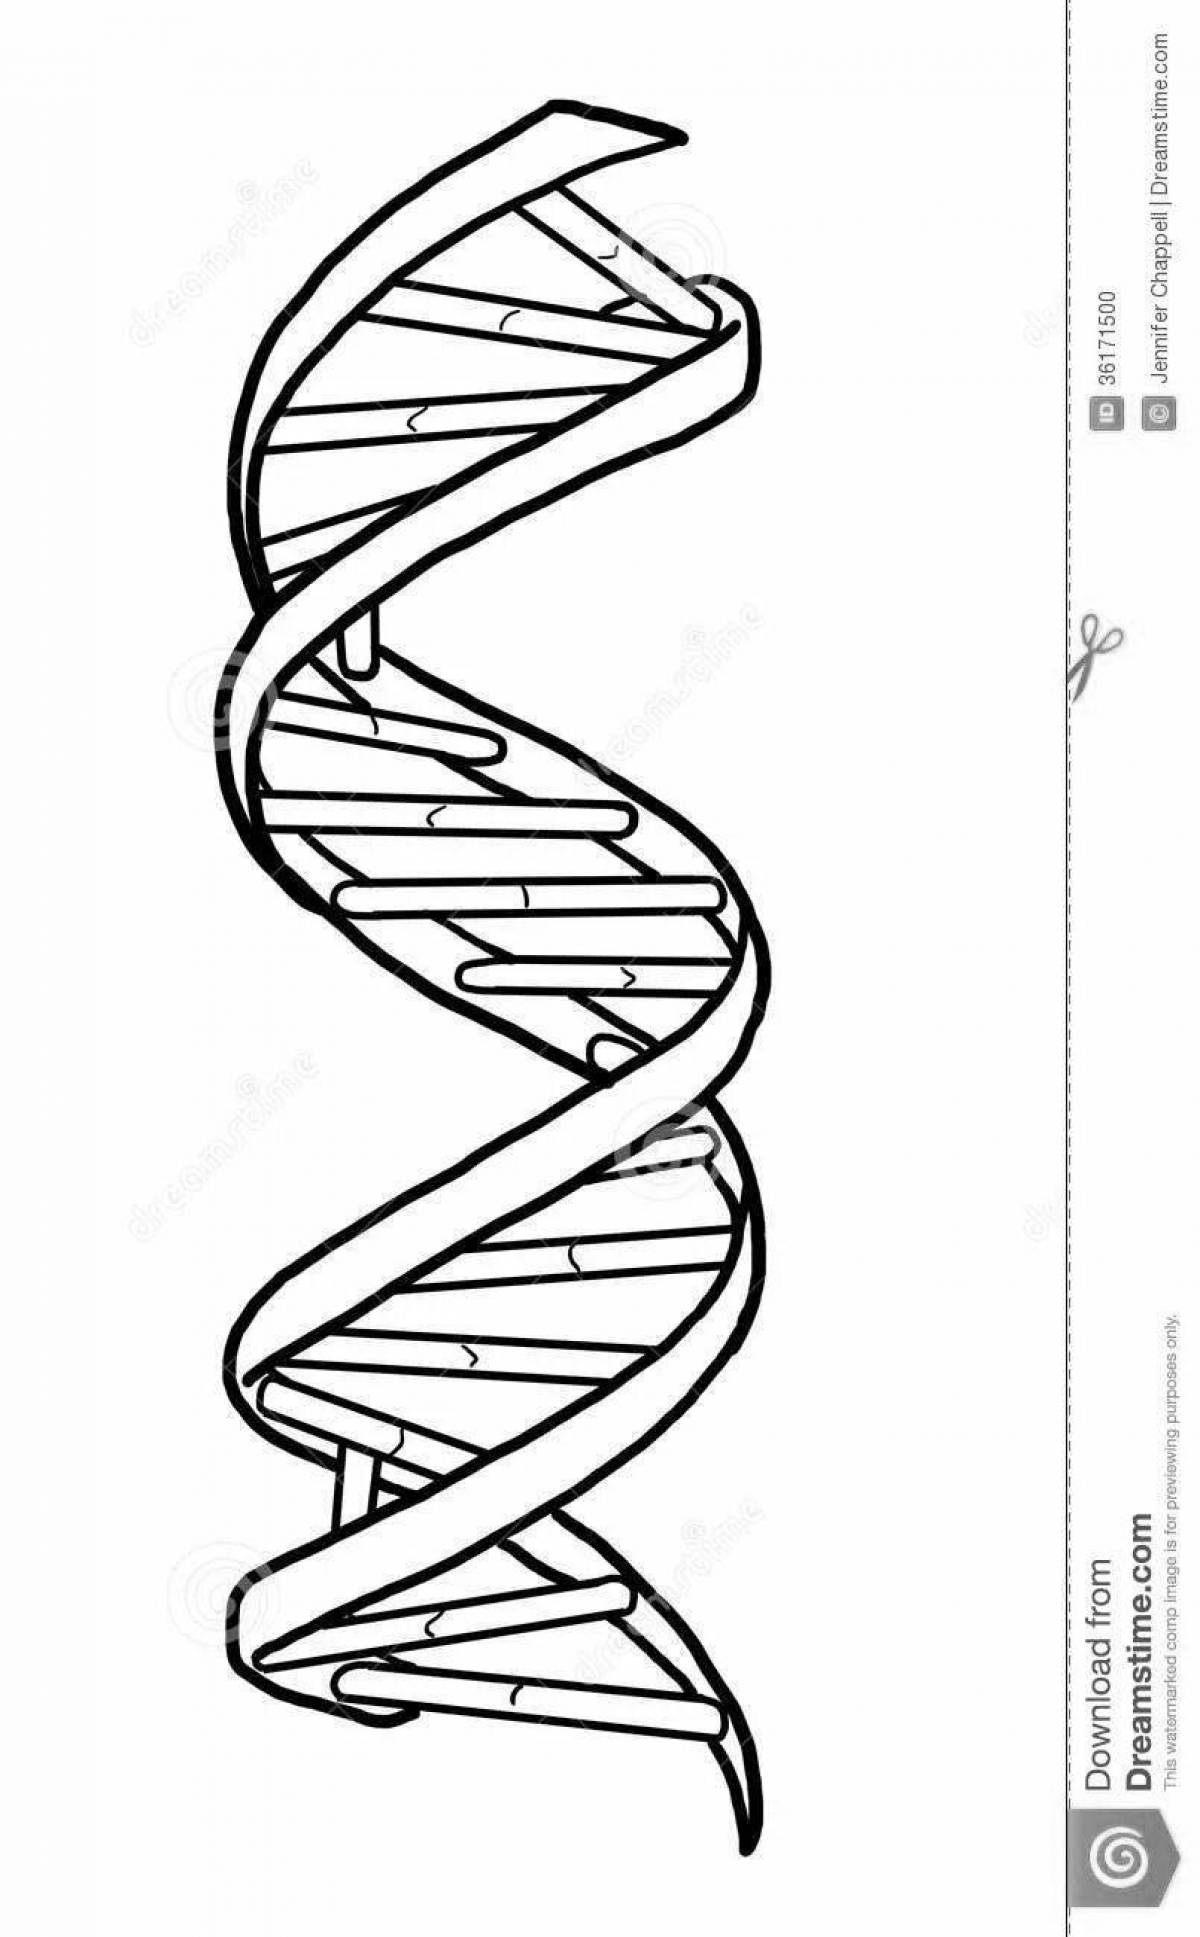 Молекула ДНК раскраска